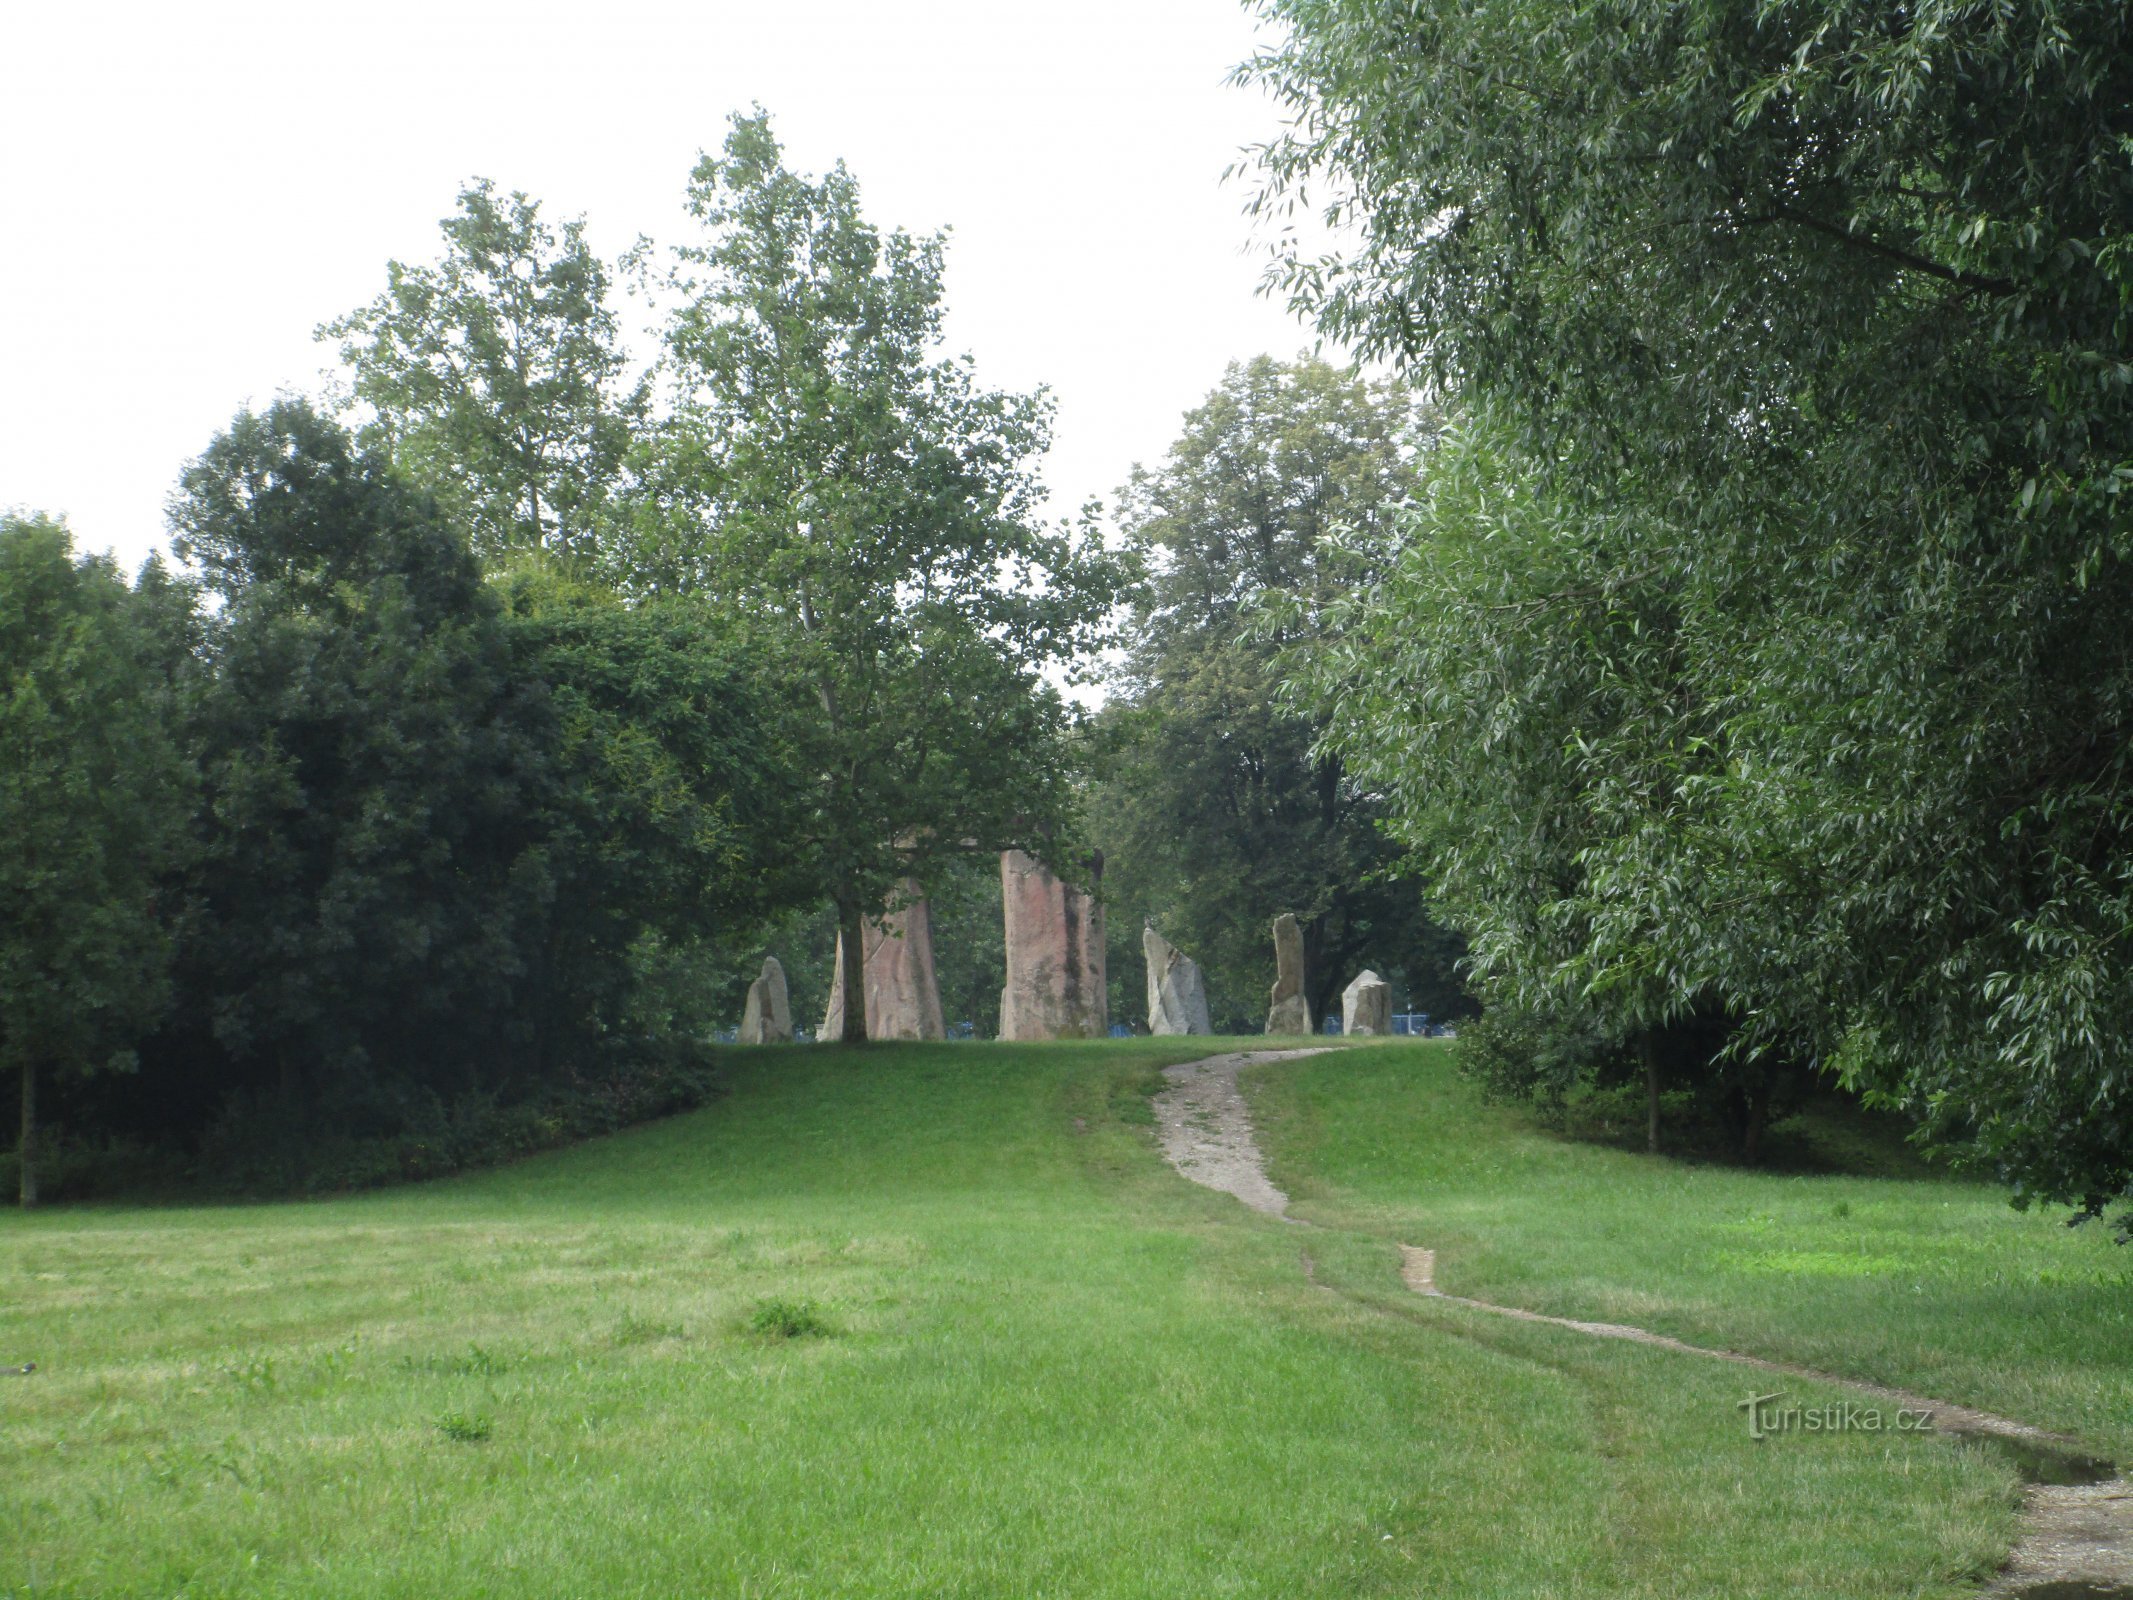 näkymä Stonehengen kopiosta Soutok Forest Parkista